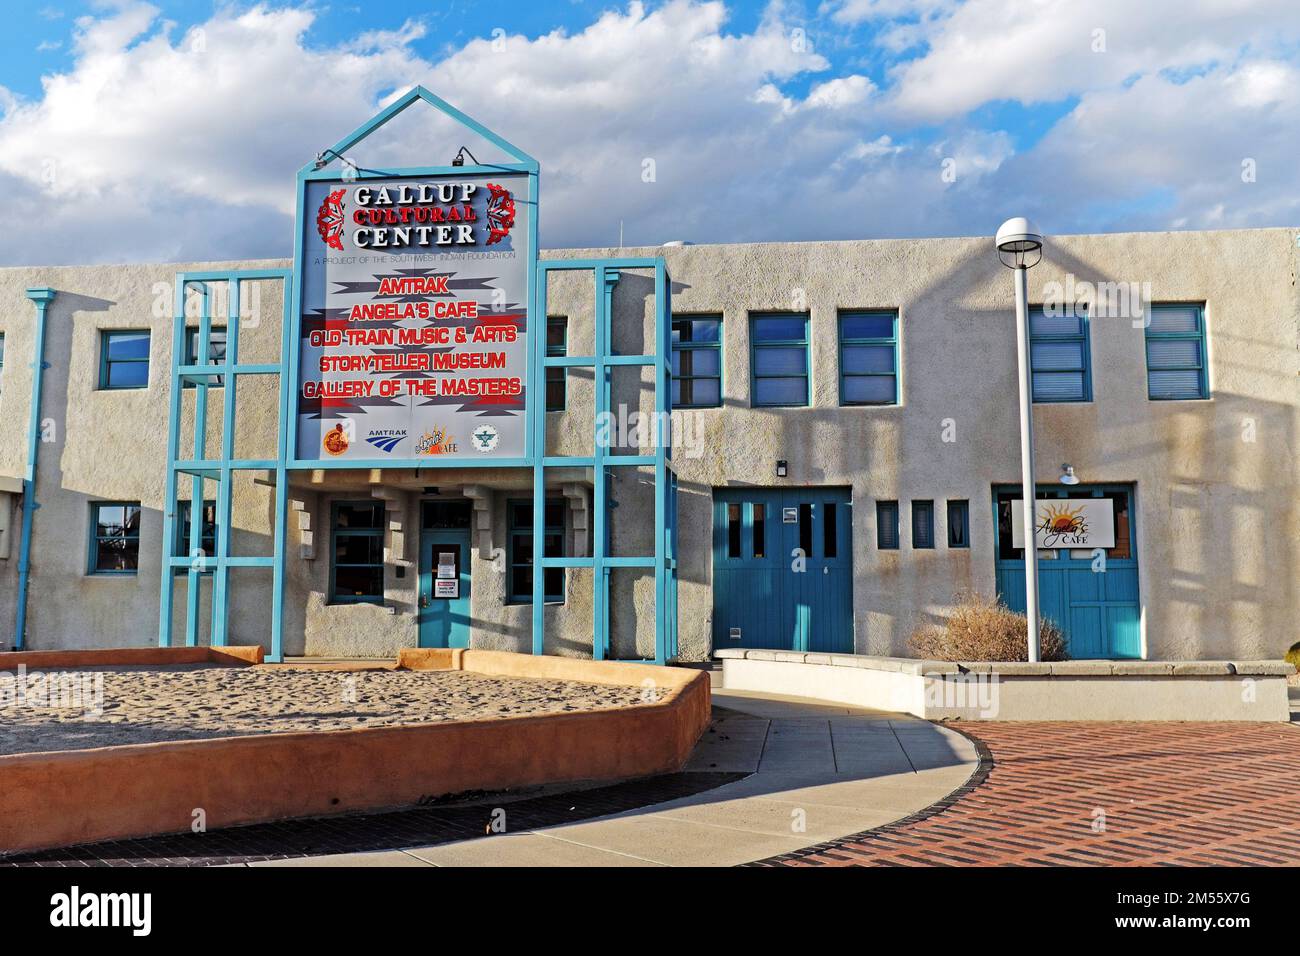 Das Gallup Cultural Center in Gallup, New Mexico, befindet sich in einem umgewidmeten Zugdepot. Das Zentrum konzentriert sich auf die indische Kultur und den Südwesten. Stockfoto